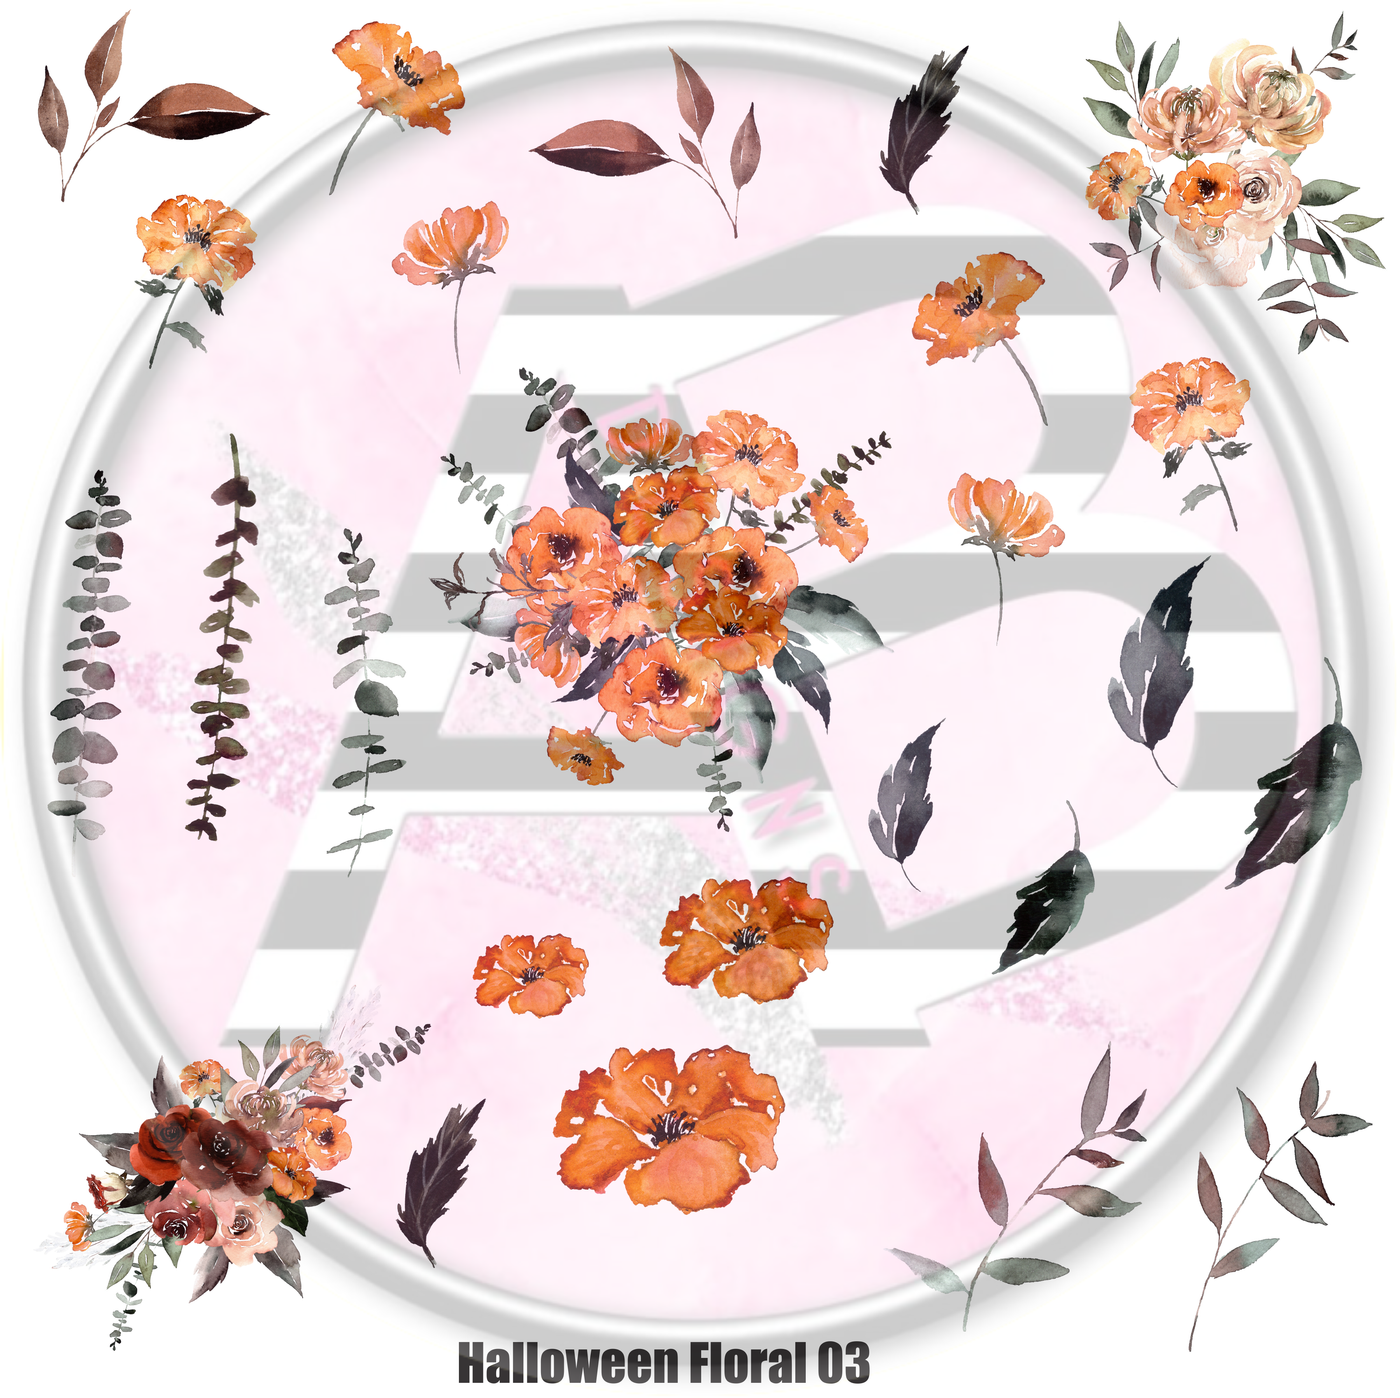 Halloween Floral 03 Full Sheet 12x12 - Clear Sheet